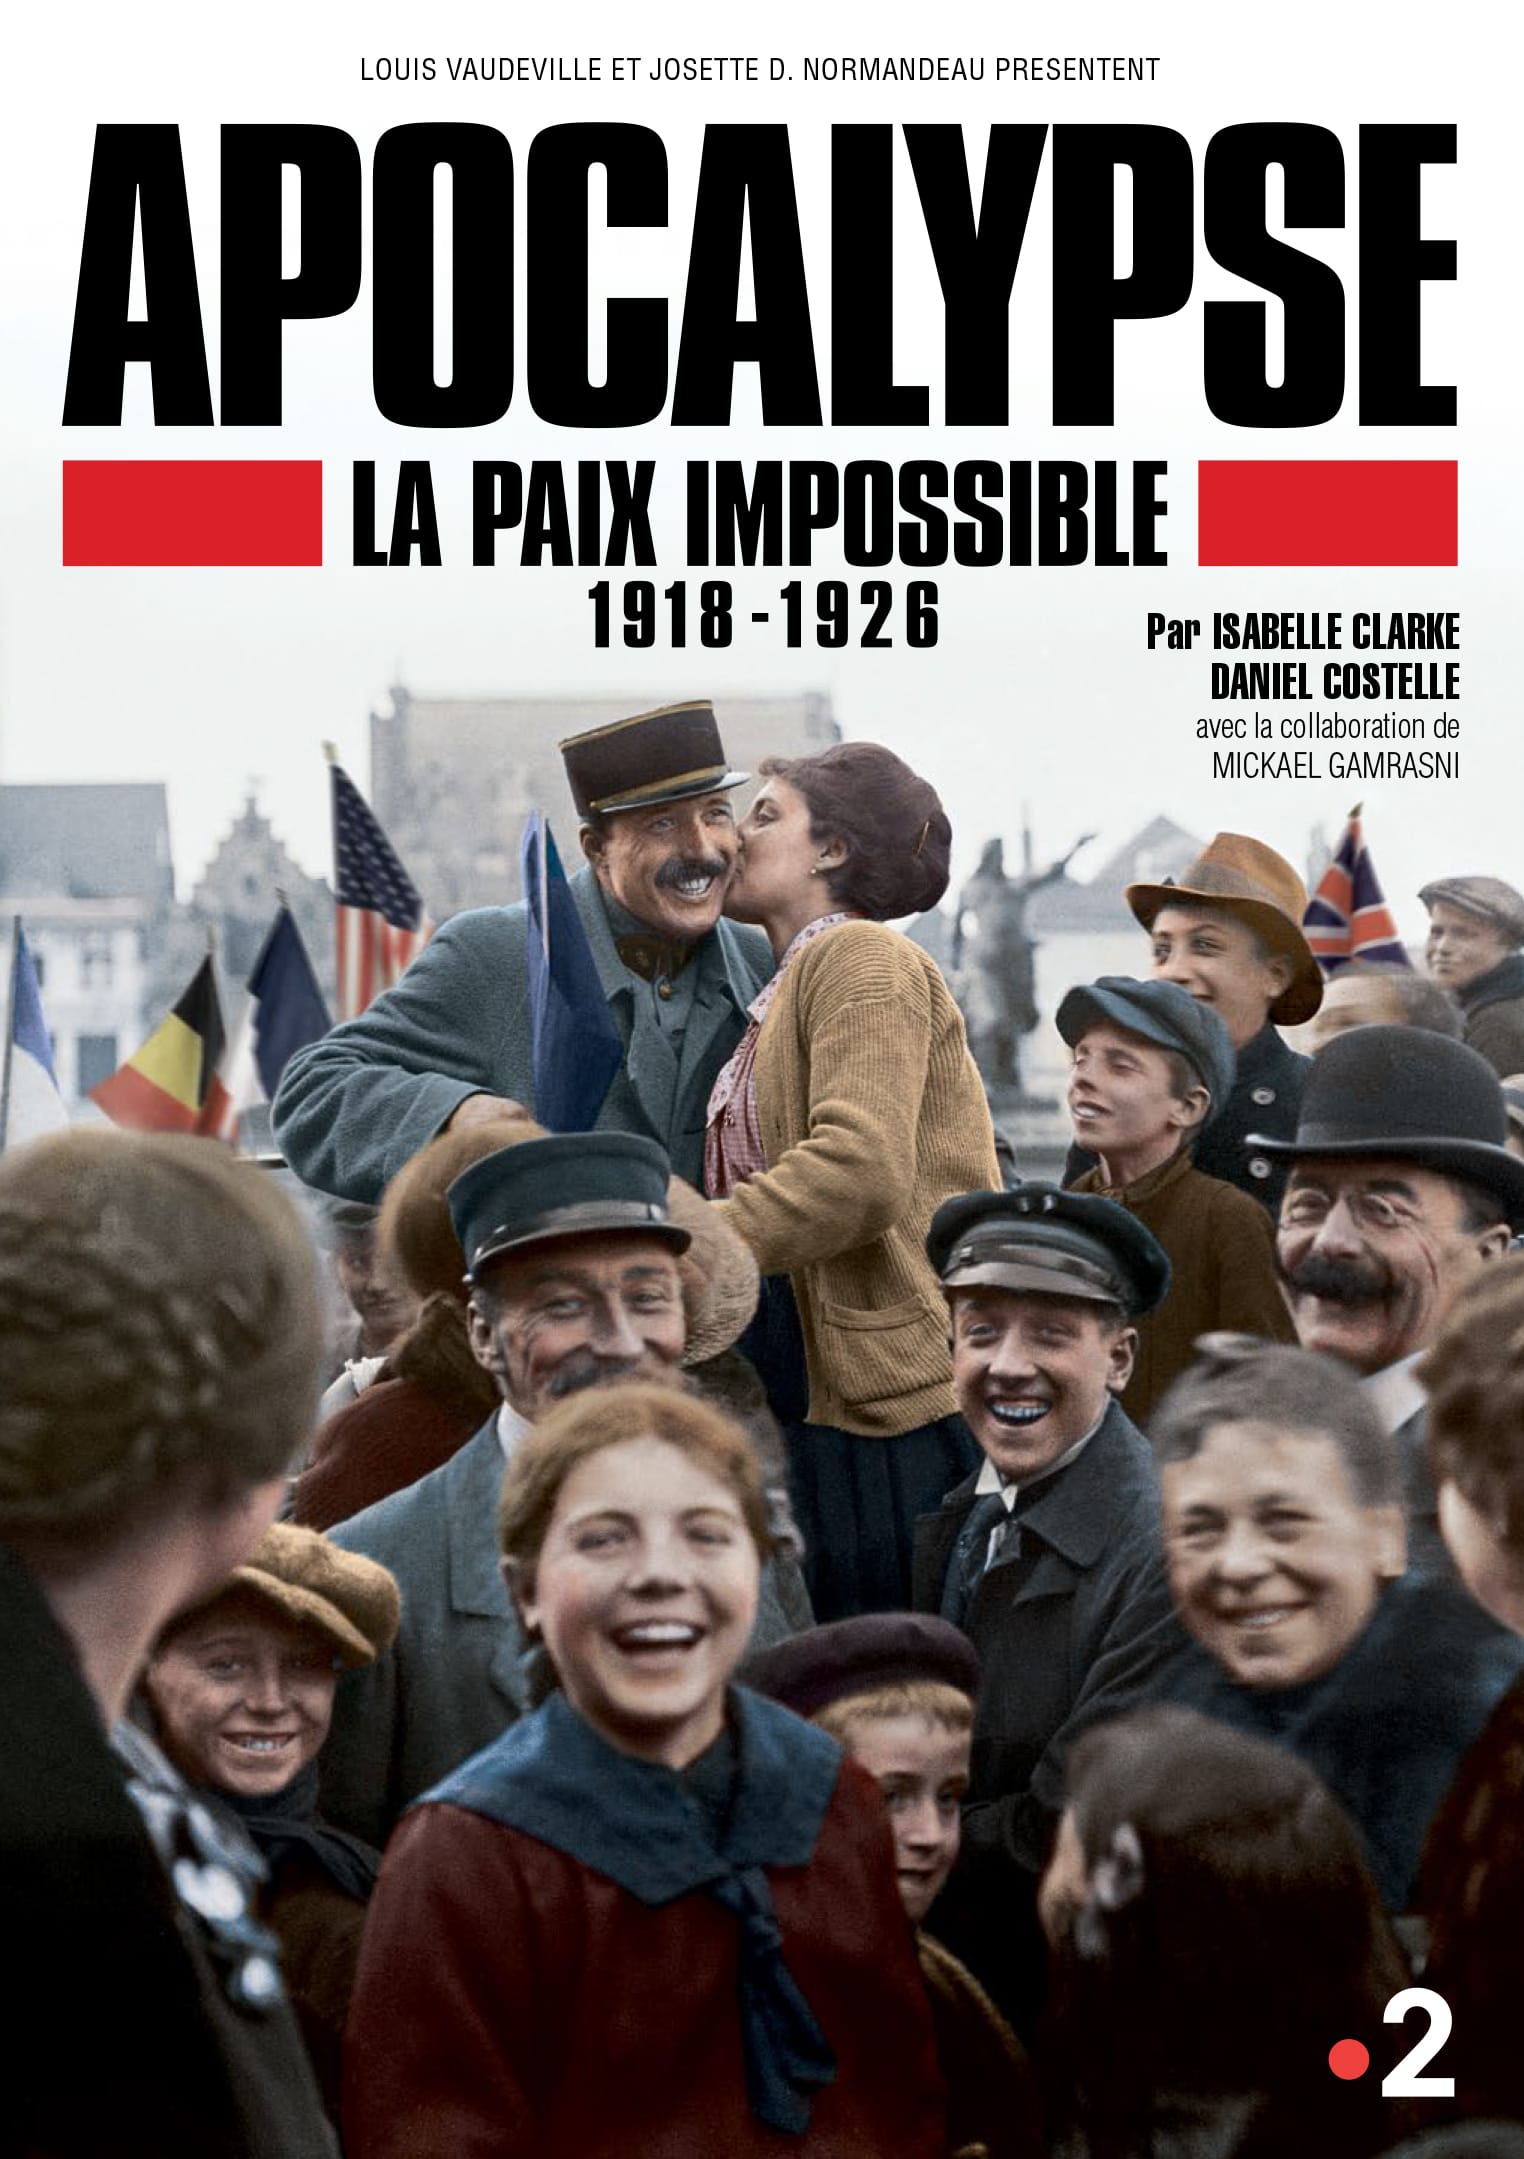 APOCALYPSE La Paix impossible d'Isabelle Clarke et Daniel Costelle affiche documentaire